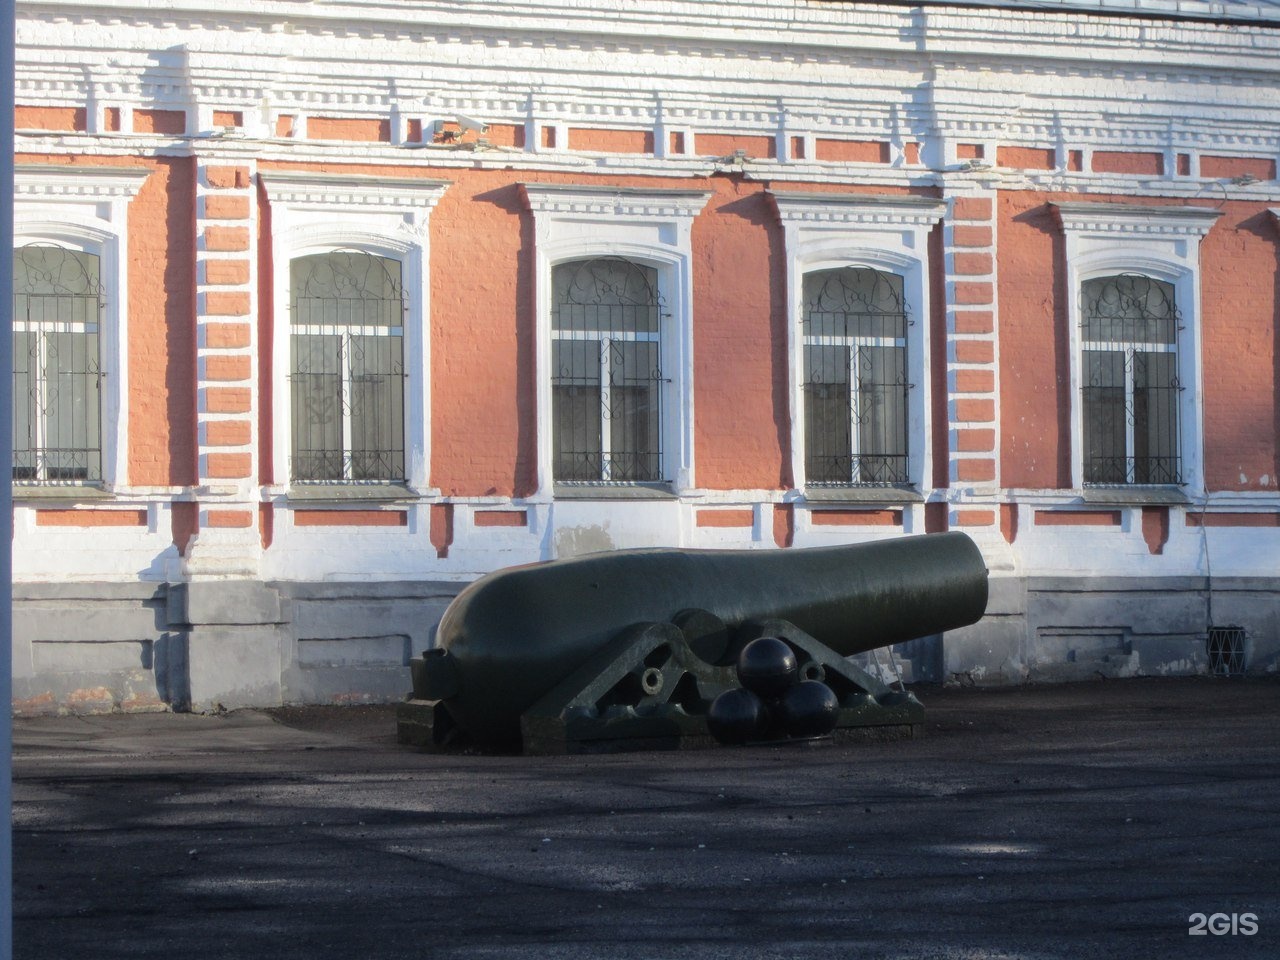 музей артиллерии в перми